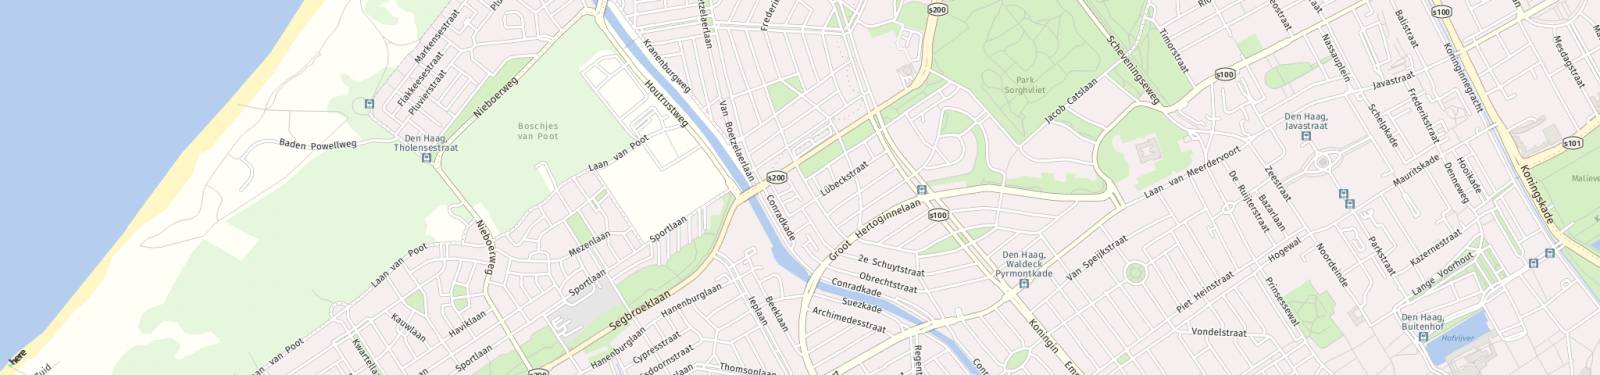 Kaart met locatie Appartement Stadhoudersplantsoen